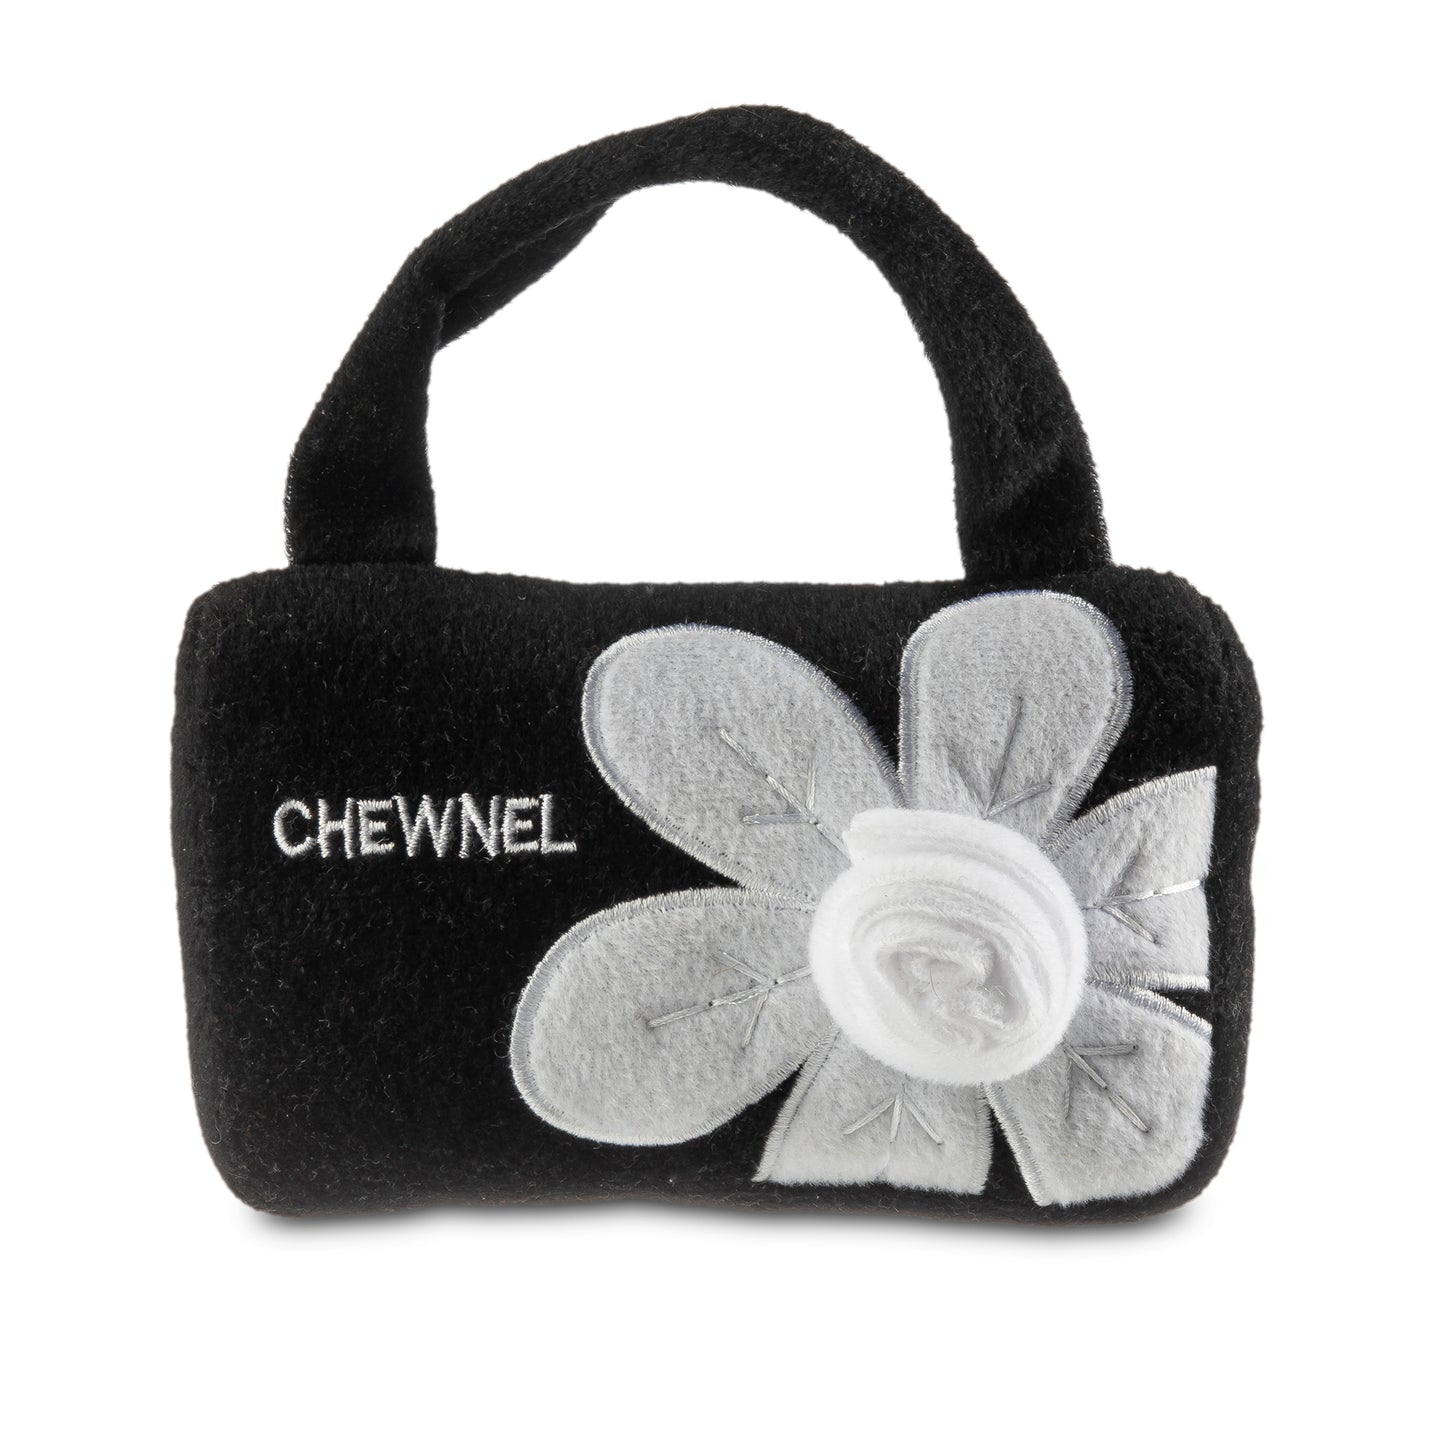 Chewnel Flower Bag Toy